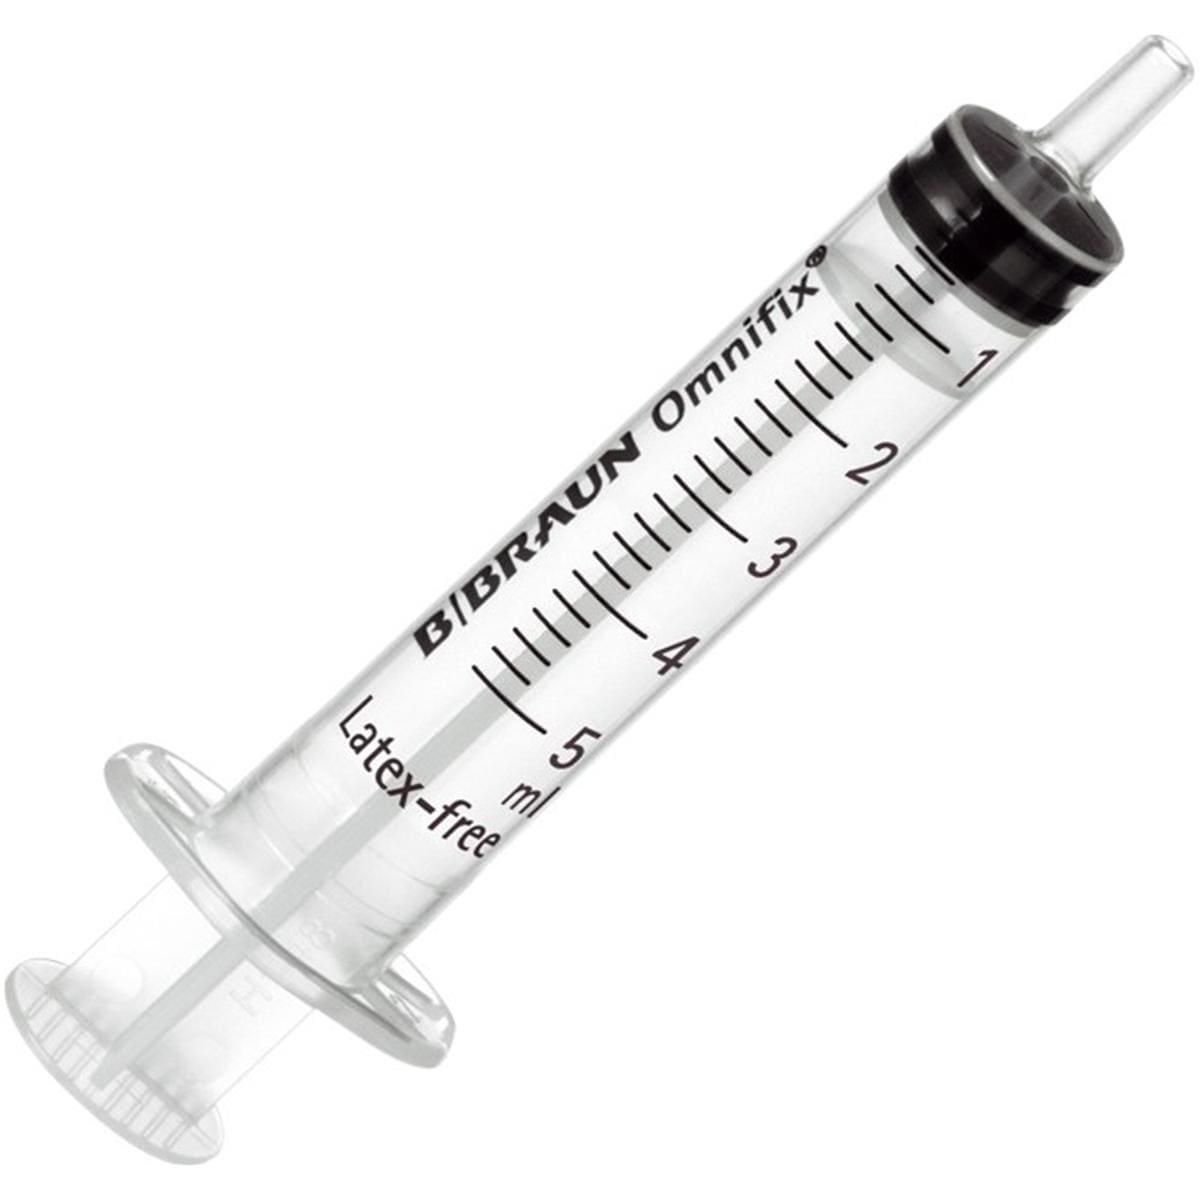 Injectiespuit 3-delig, luer - 5ml, per 100 stuks